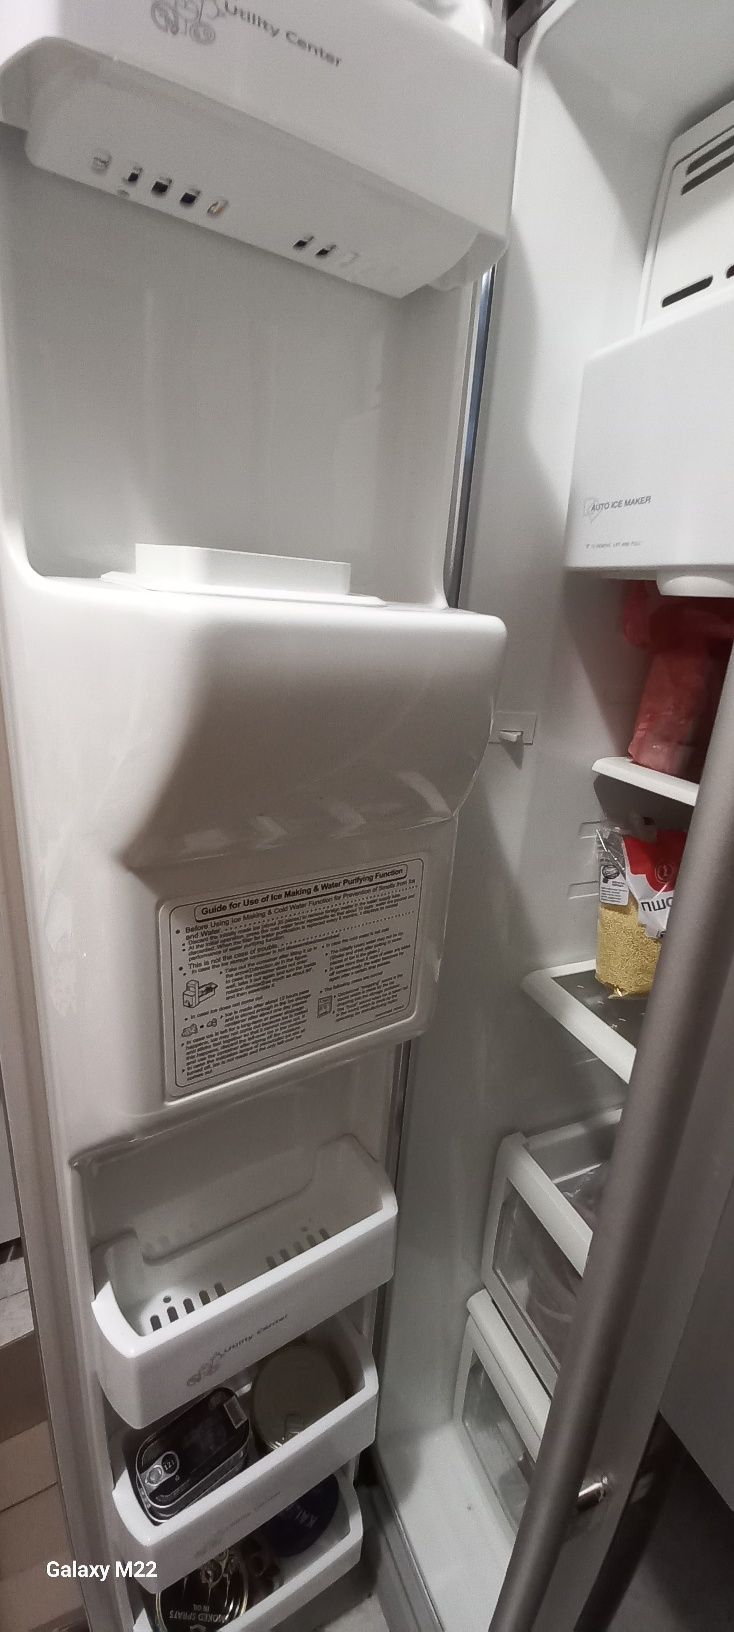 Холодильник Samsung Side Bi Side